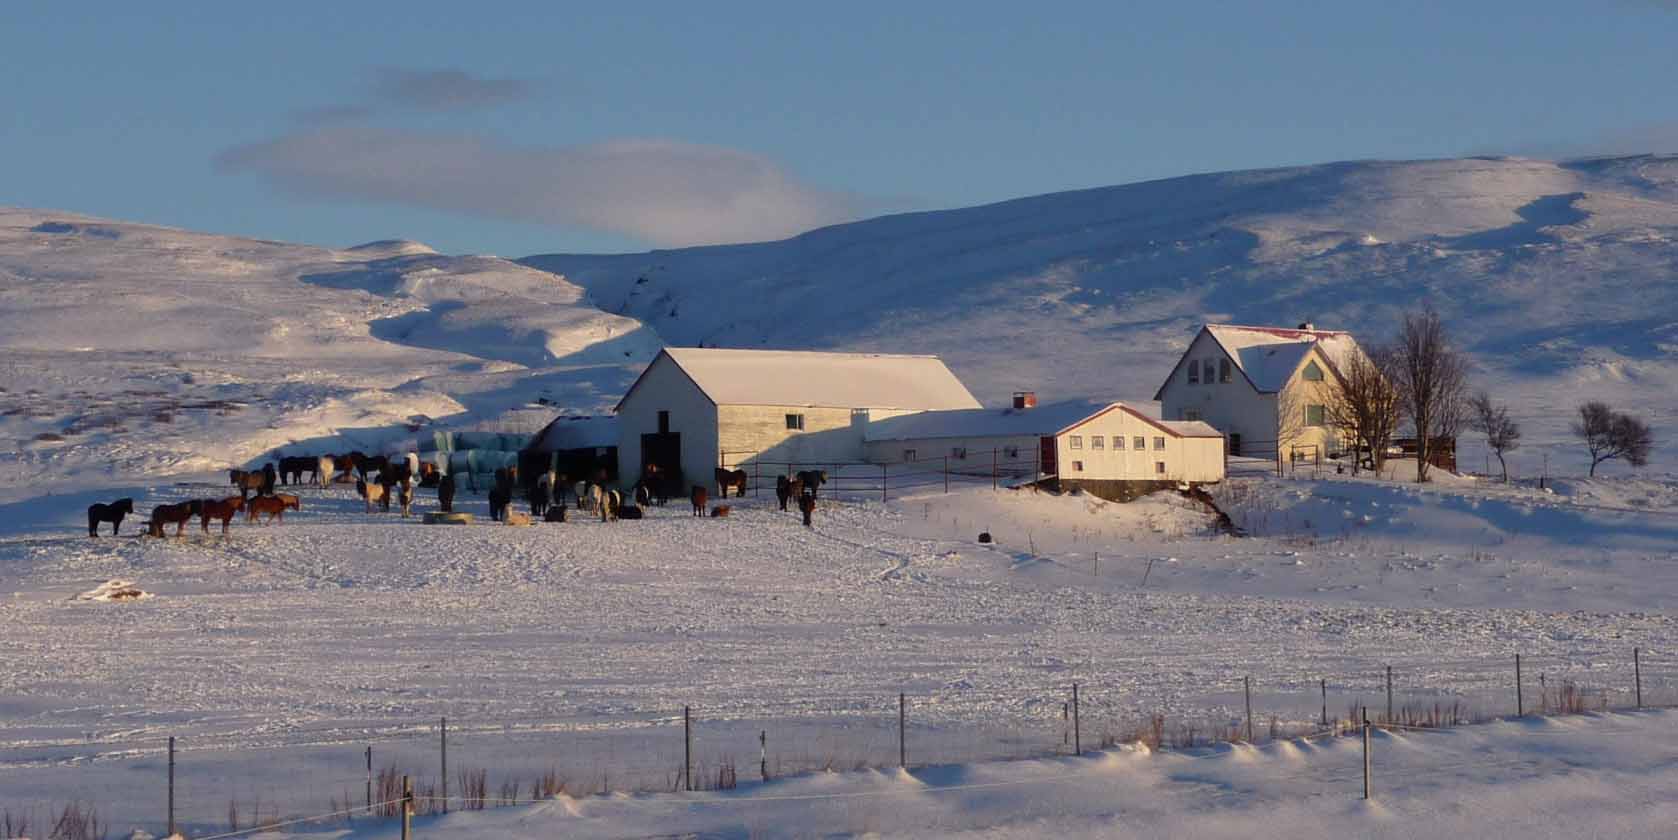 Iceland ProTravel